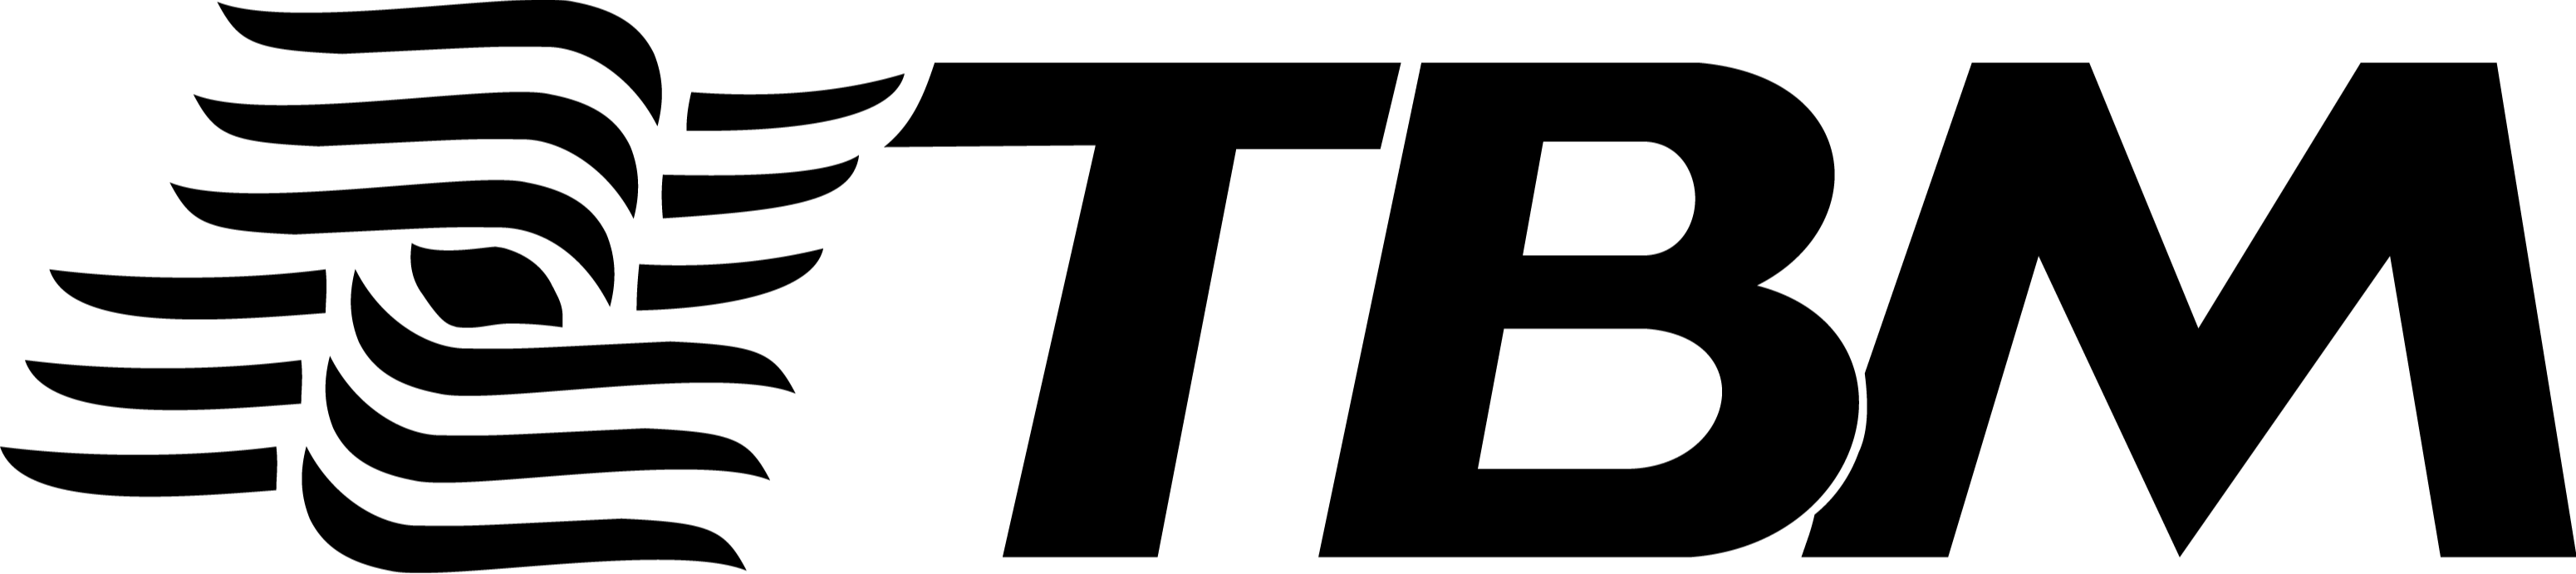 Logo da empresa Têxtil Bezerra de Menezes abreviada pelas letas T, B e M na cor preta com um símbolo que representa os fios e passar a sensação de movimento.